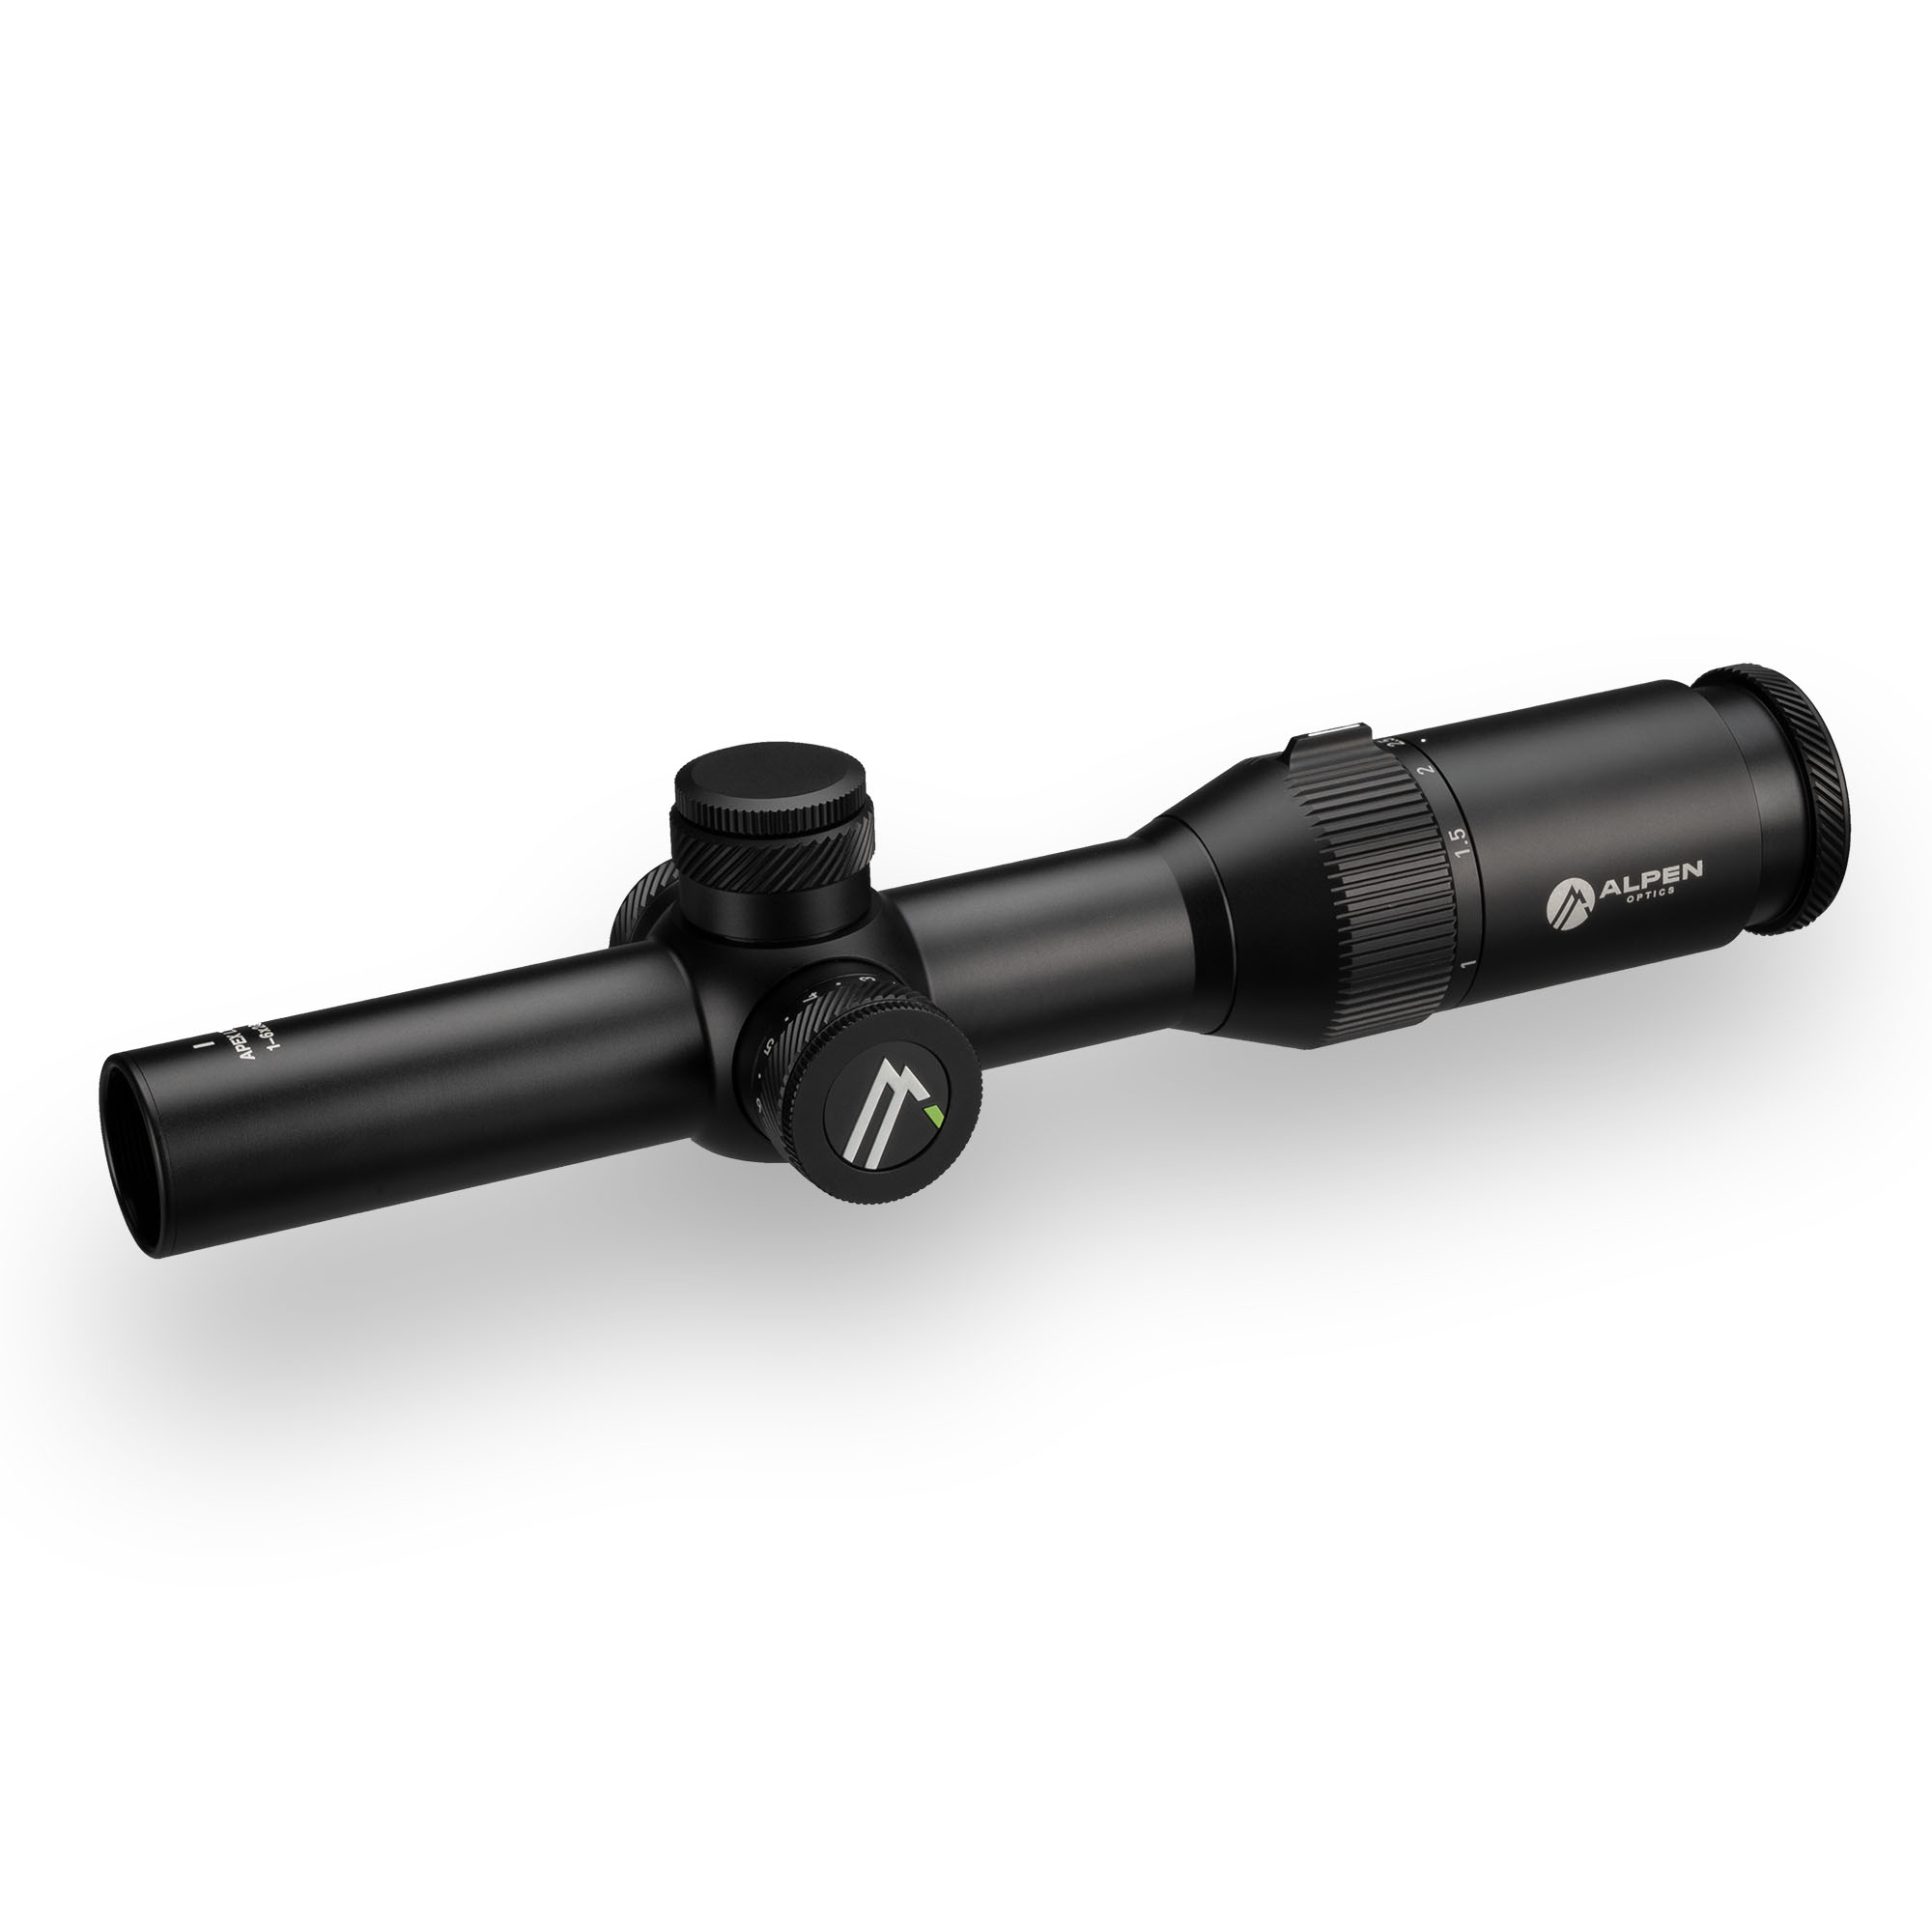 ALPEN OPTICS Apex LT riflescope 1-6x24 A4 with SmartDot technology